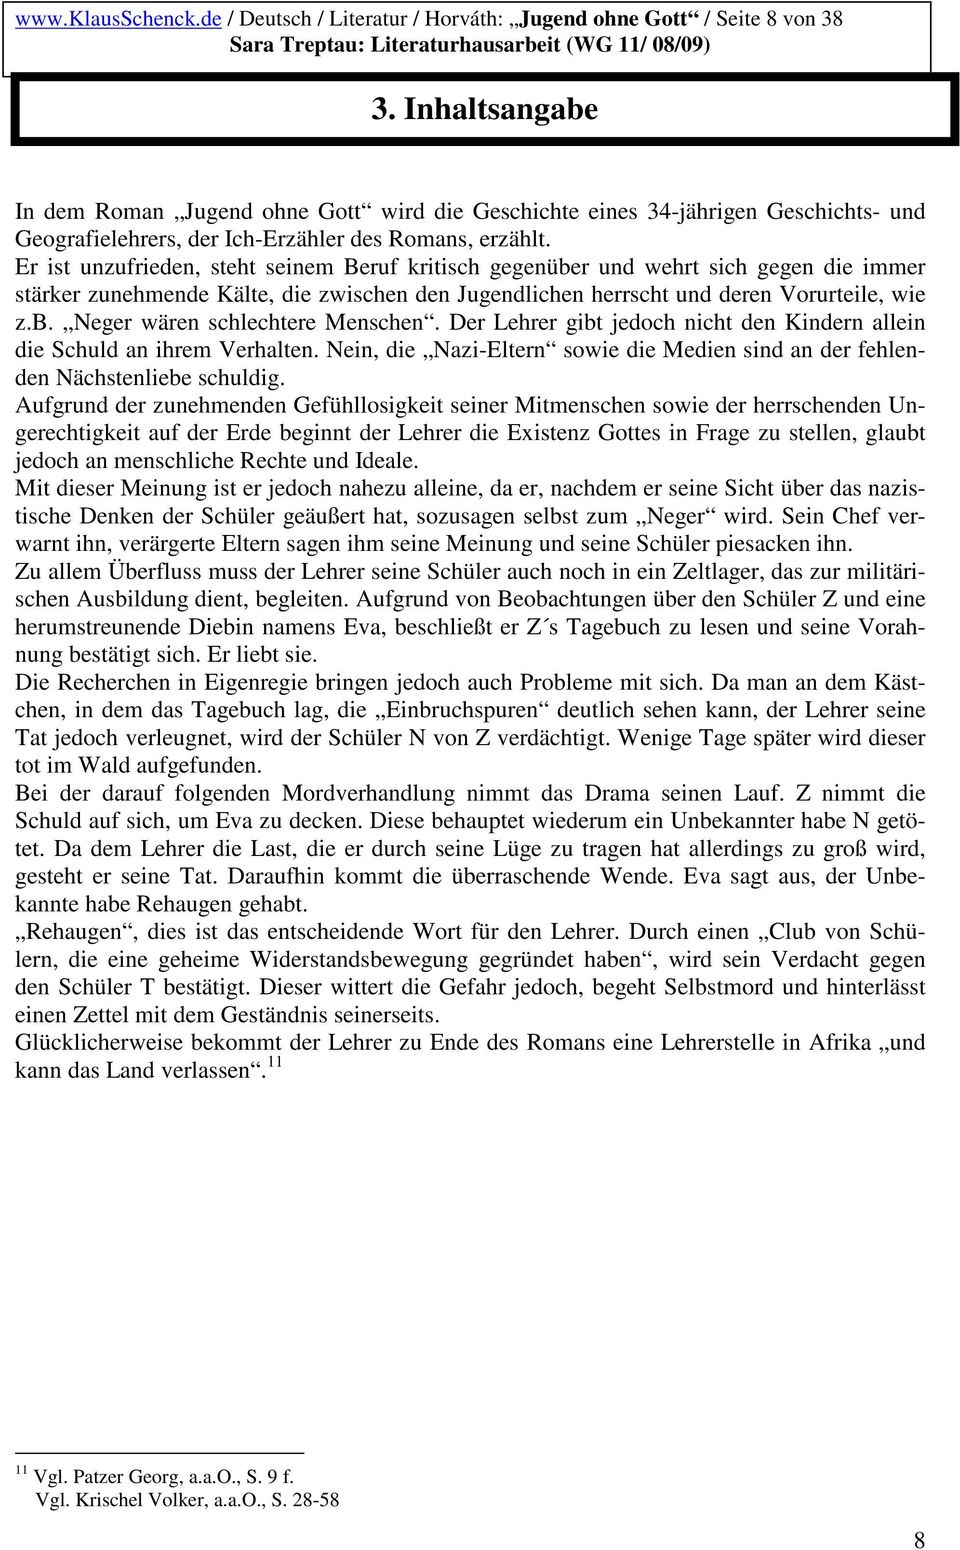 Deutsch Literatur Horvath Jugend Ohne Gott Seite 2 Von 38 Sara Treptau Literaturhausarbeit Wg 11 08 09 Pdf Kostenfreier Download